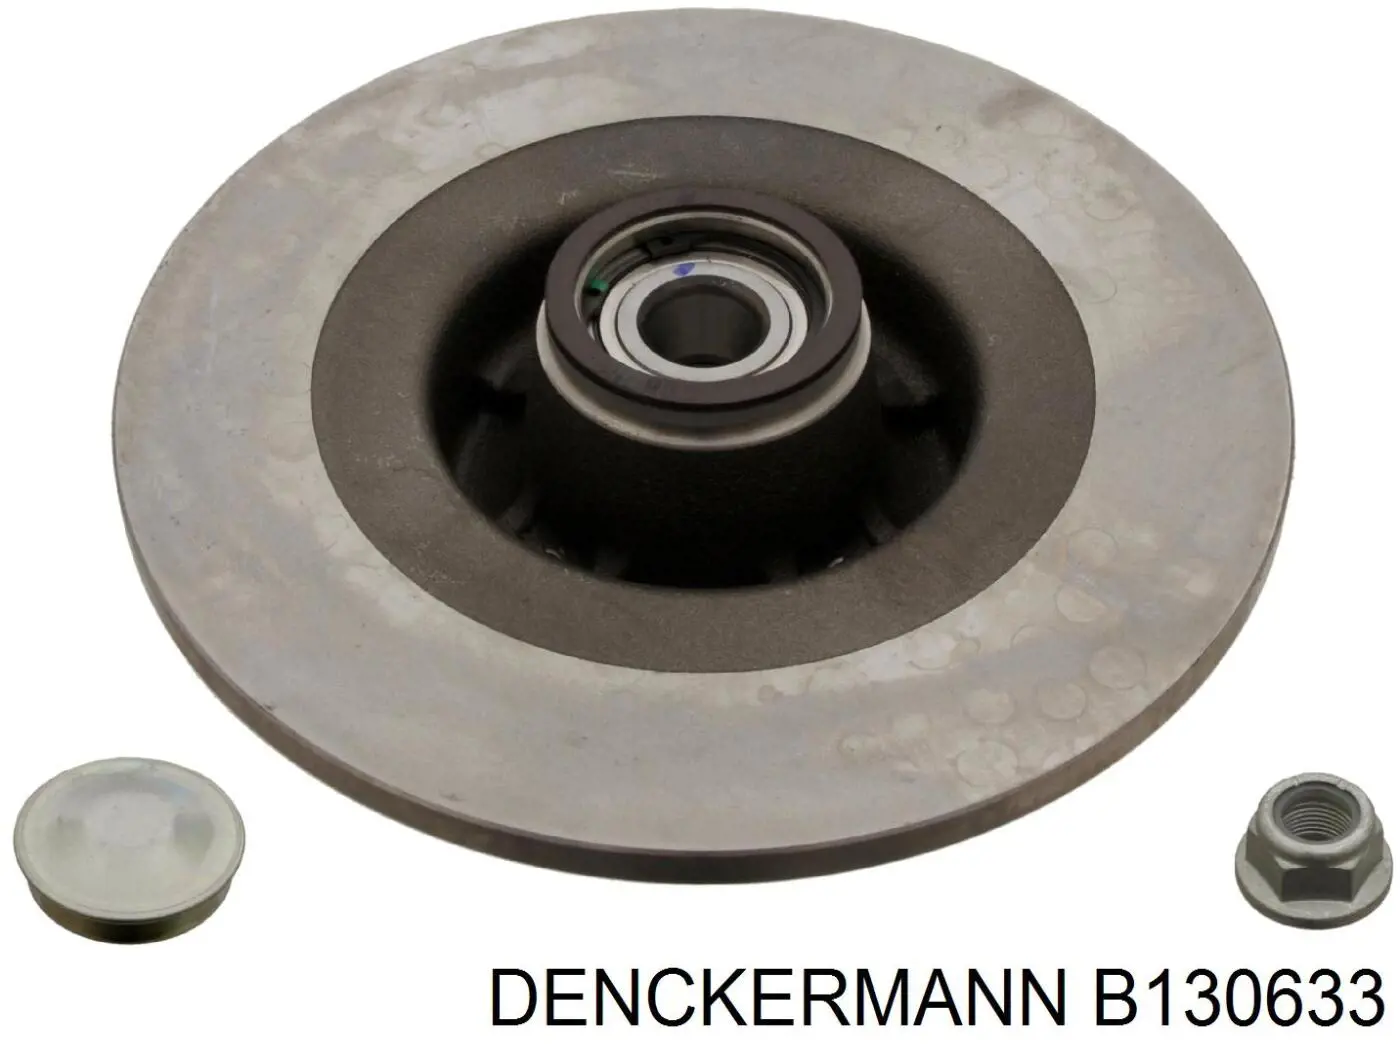 B130633 Denckermann disco do freio traseiro